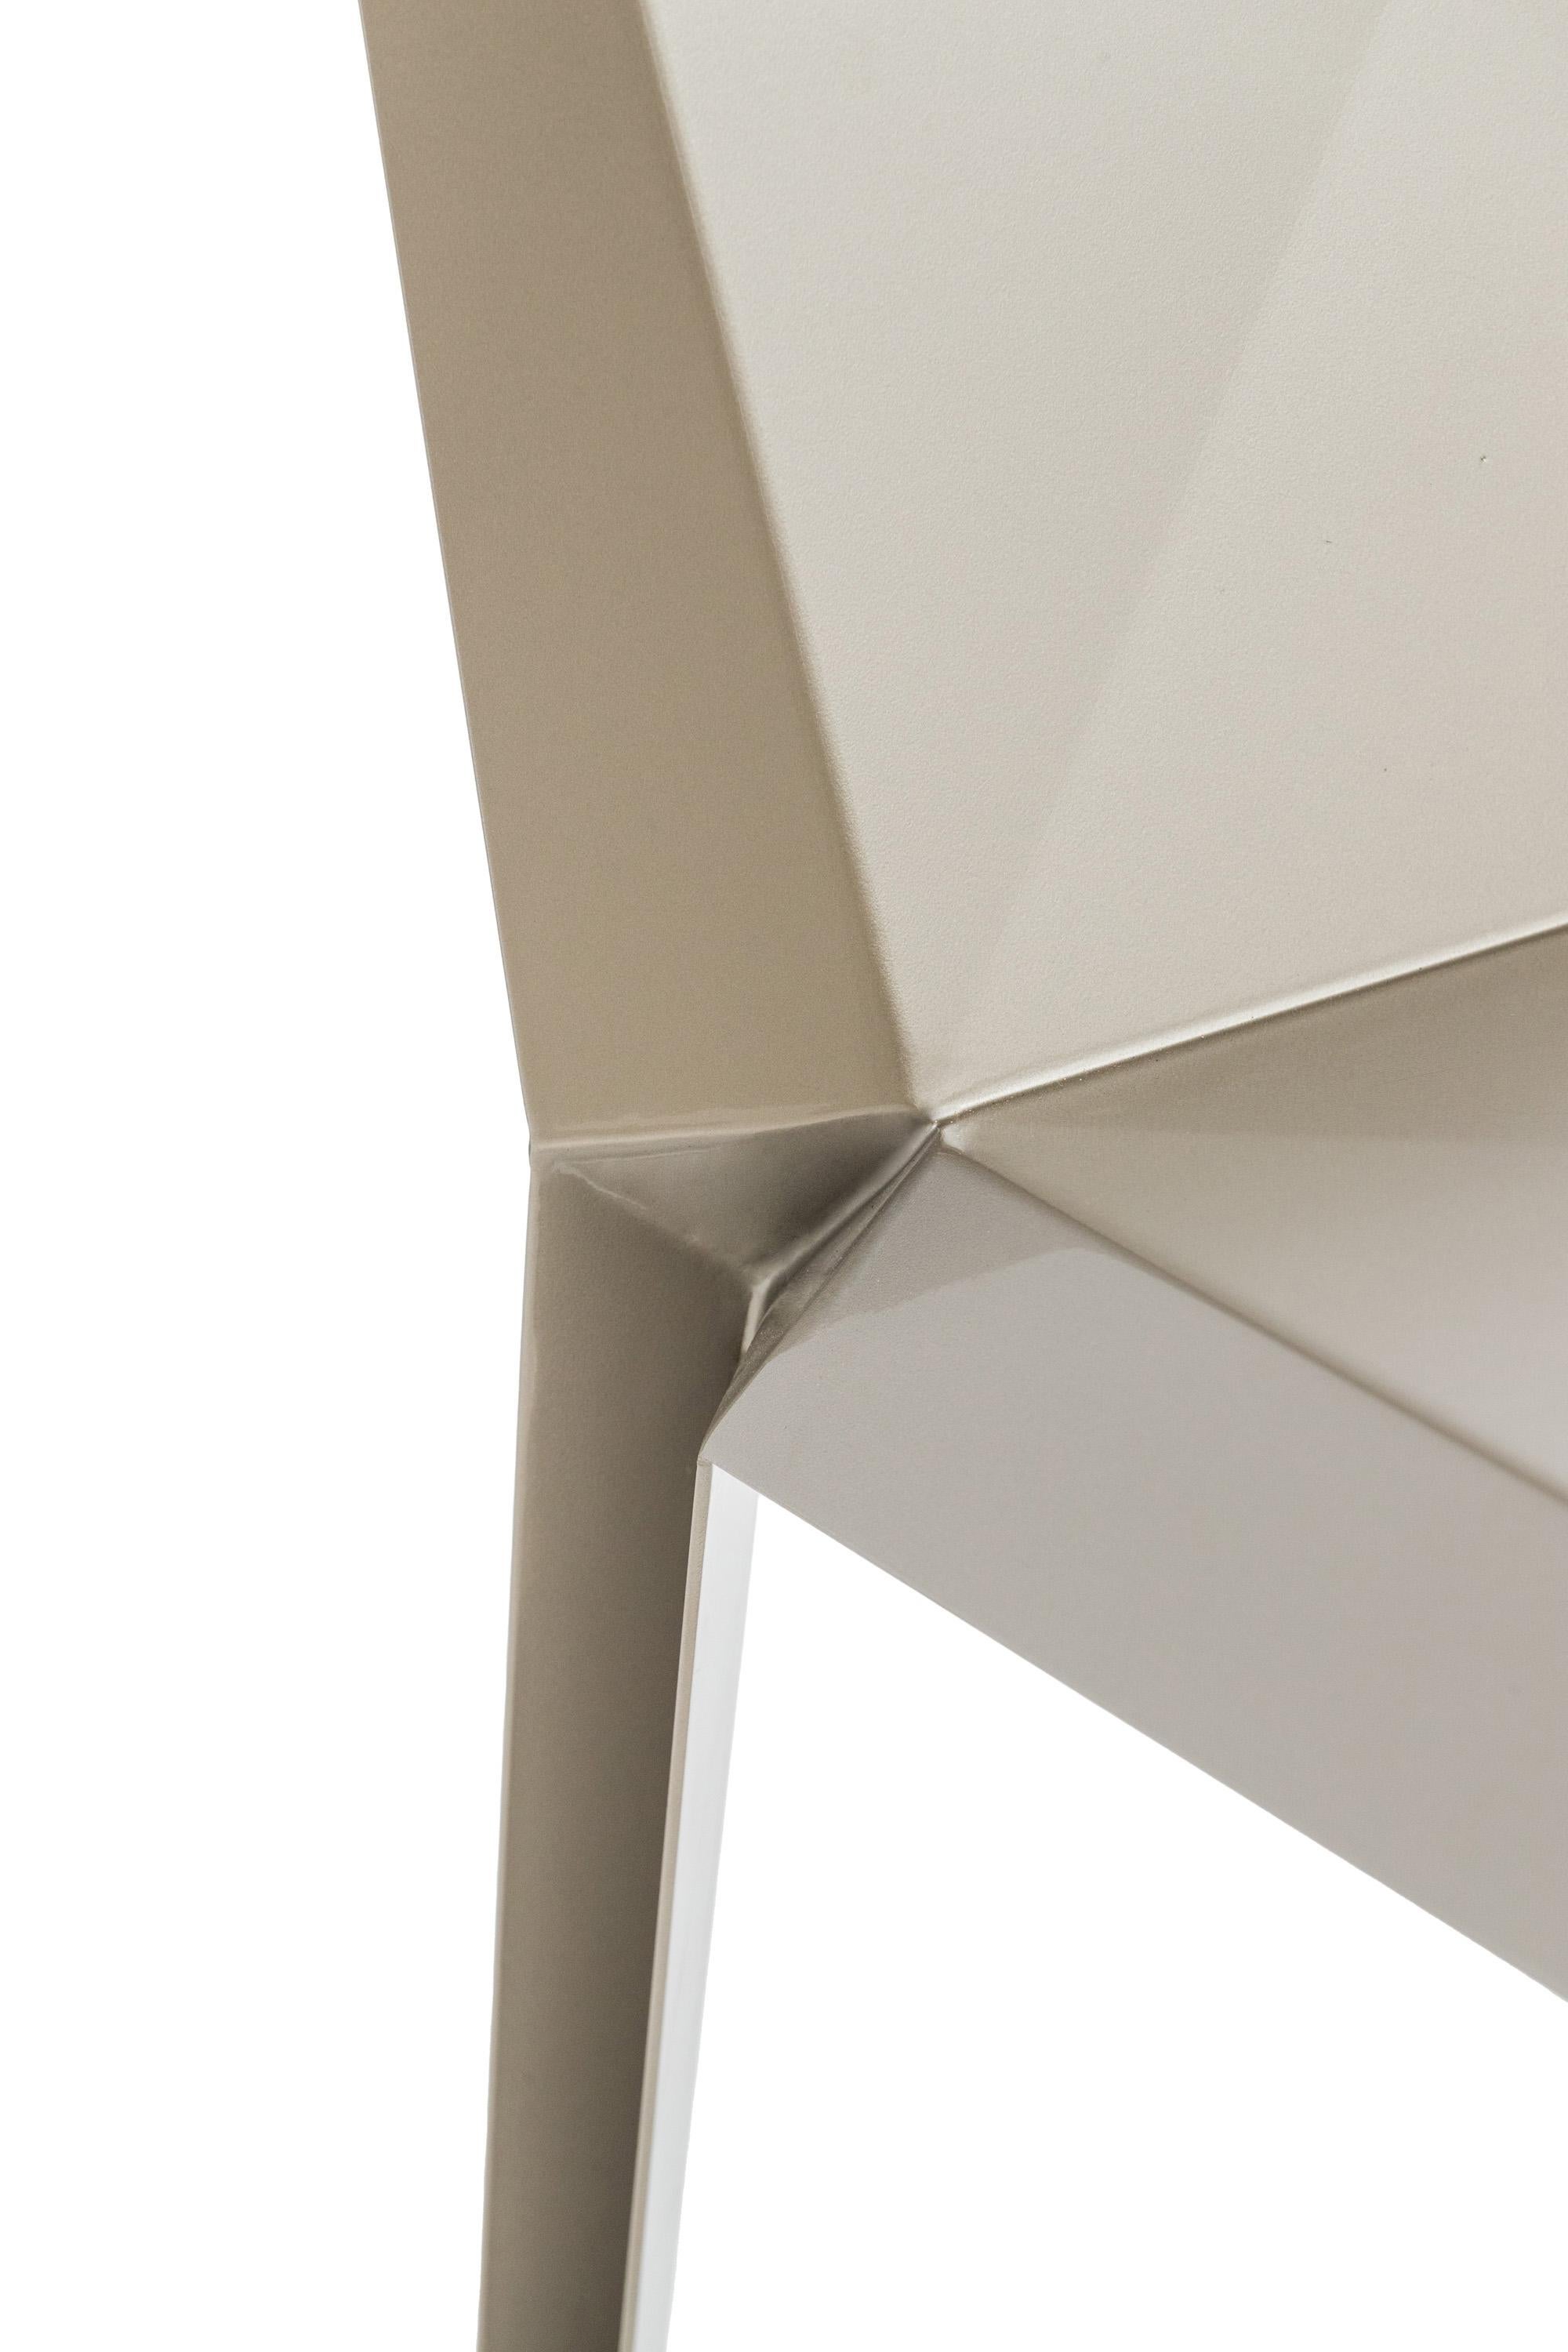 Contemporary Lingotto Chair in Aluminium by Altreforme In New Condition For Sale In Calolziocorte (Lecco) Italy, IT